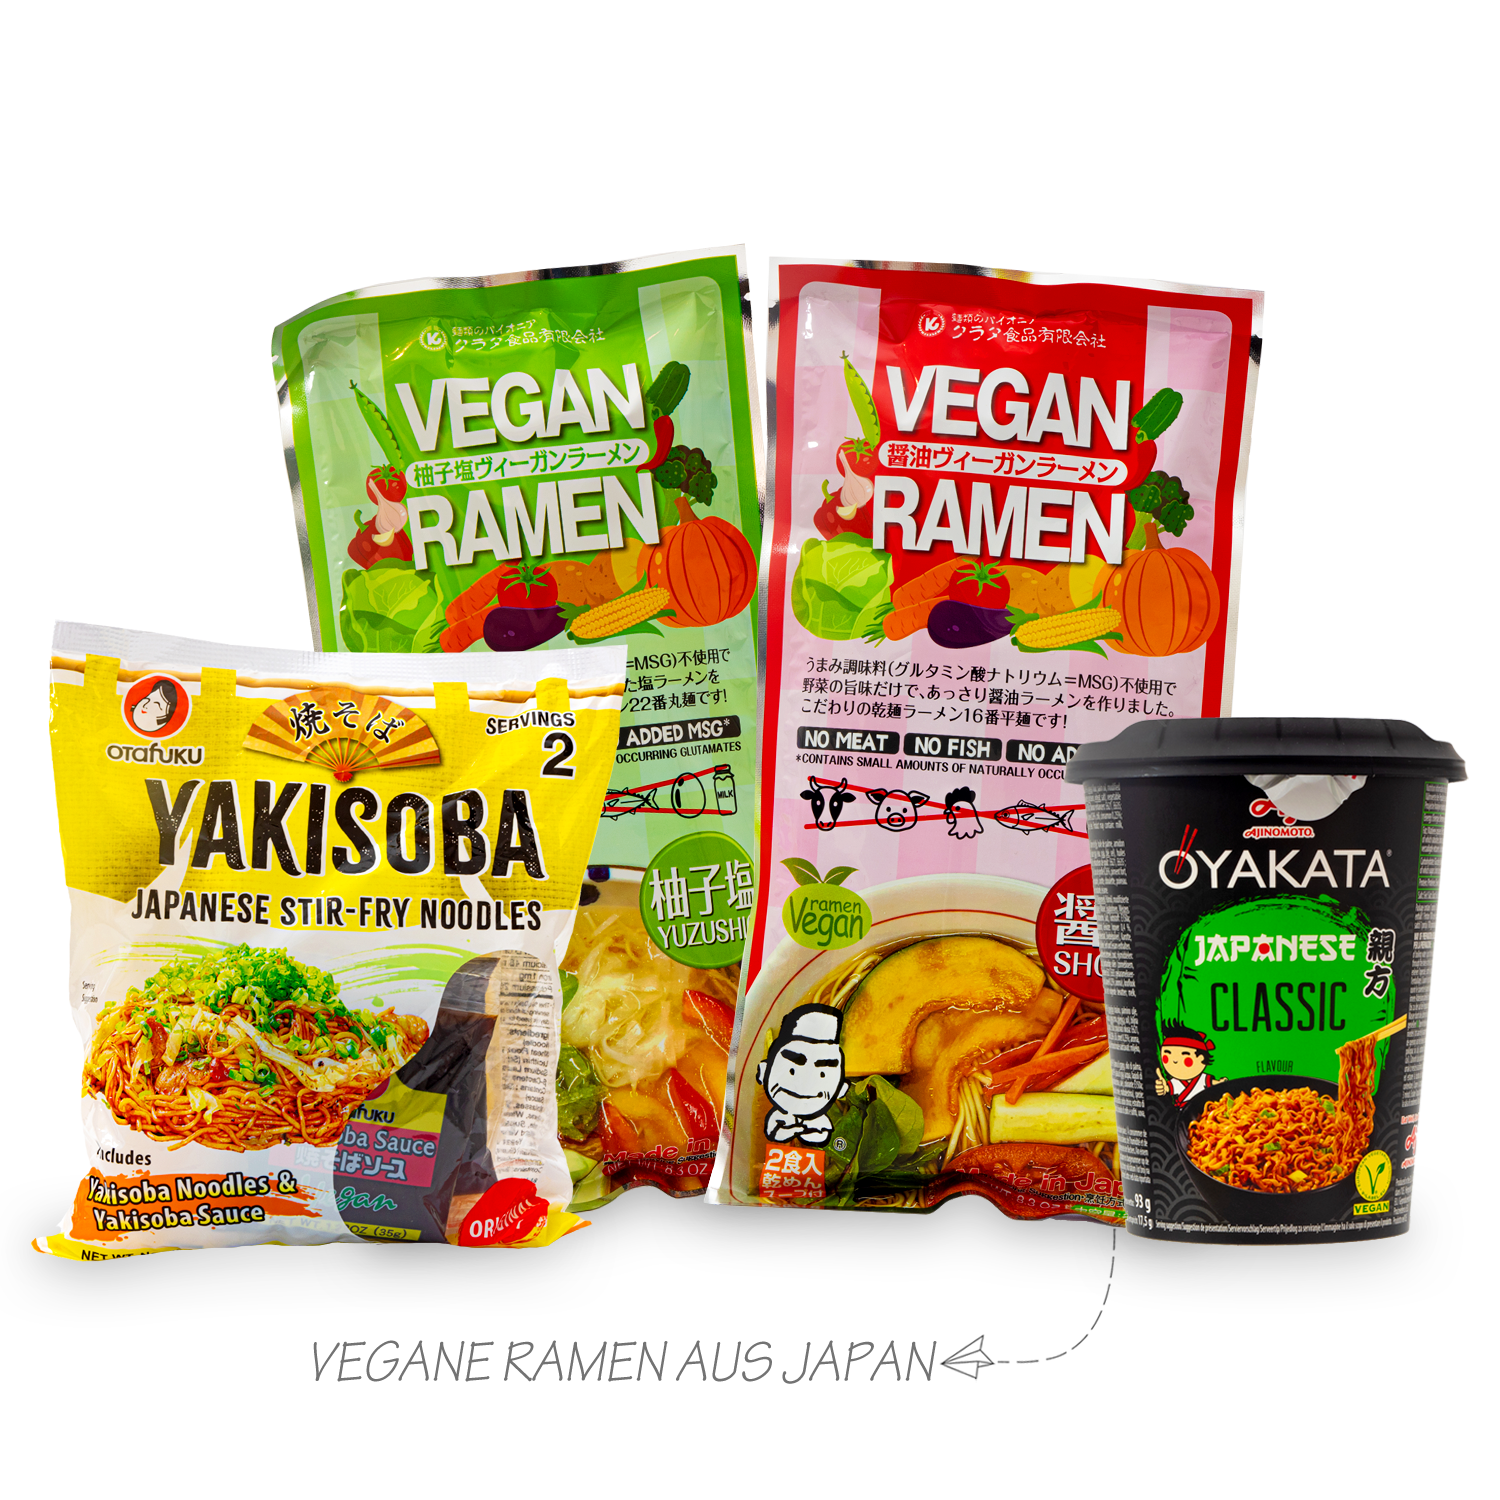 Nudelstraße Vegan: Deine vegane Nudelbox aus Asien